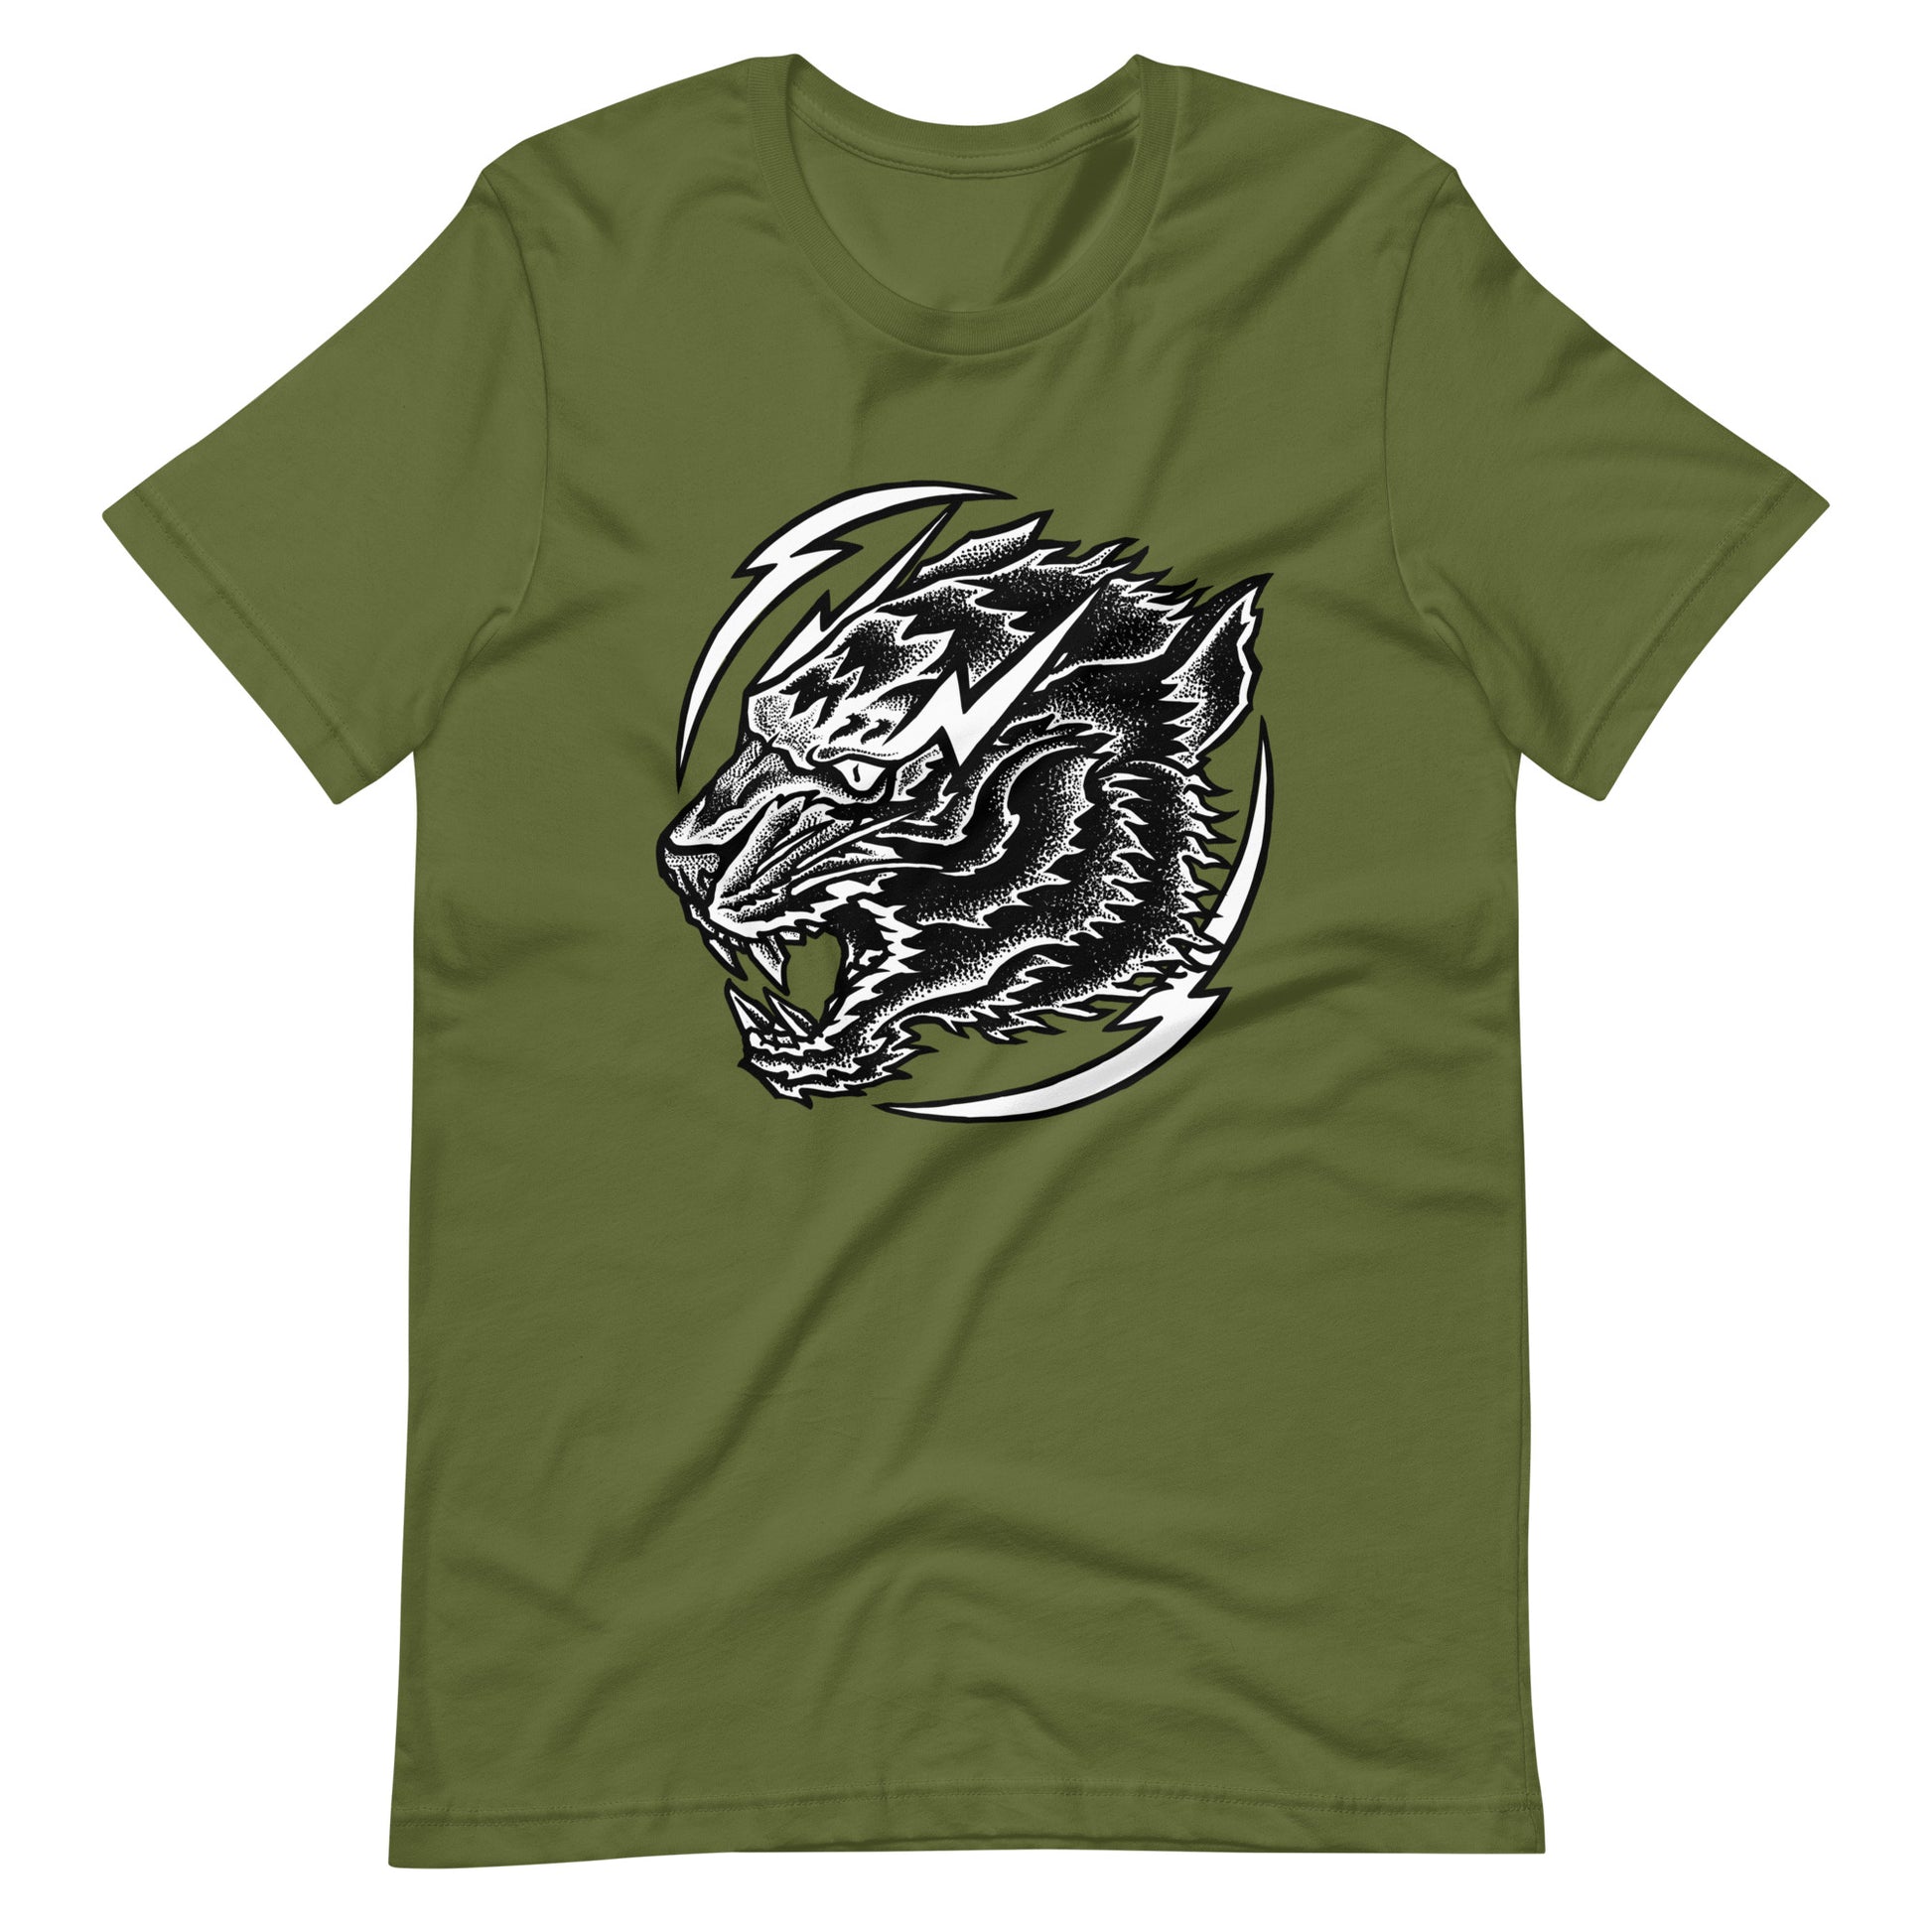 Thunder Tiger - Men's t-shirt - Olive Front